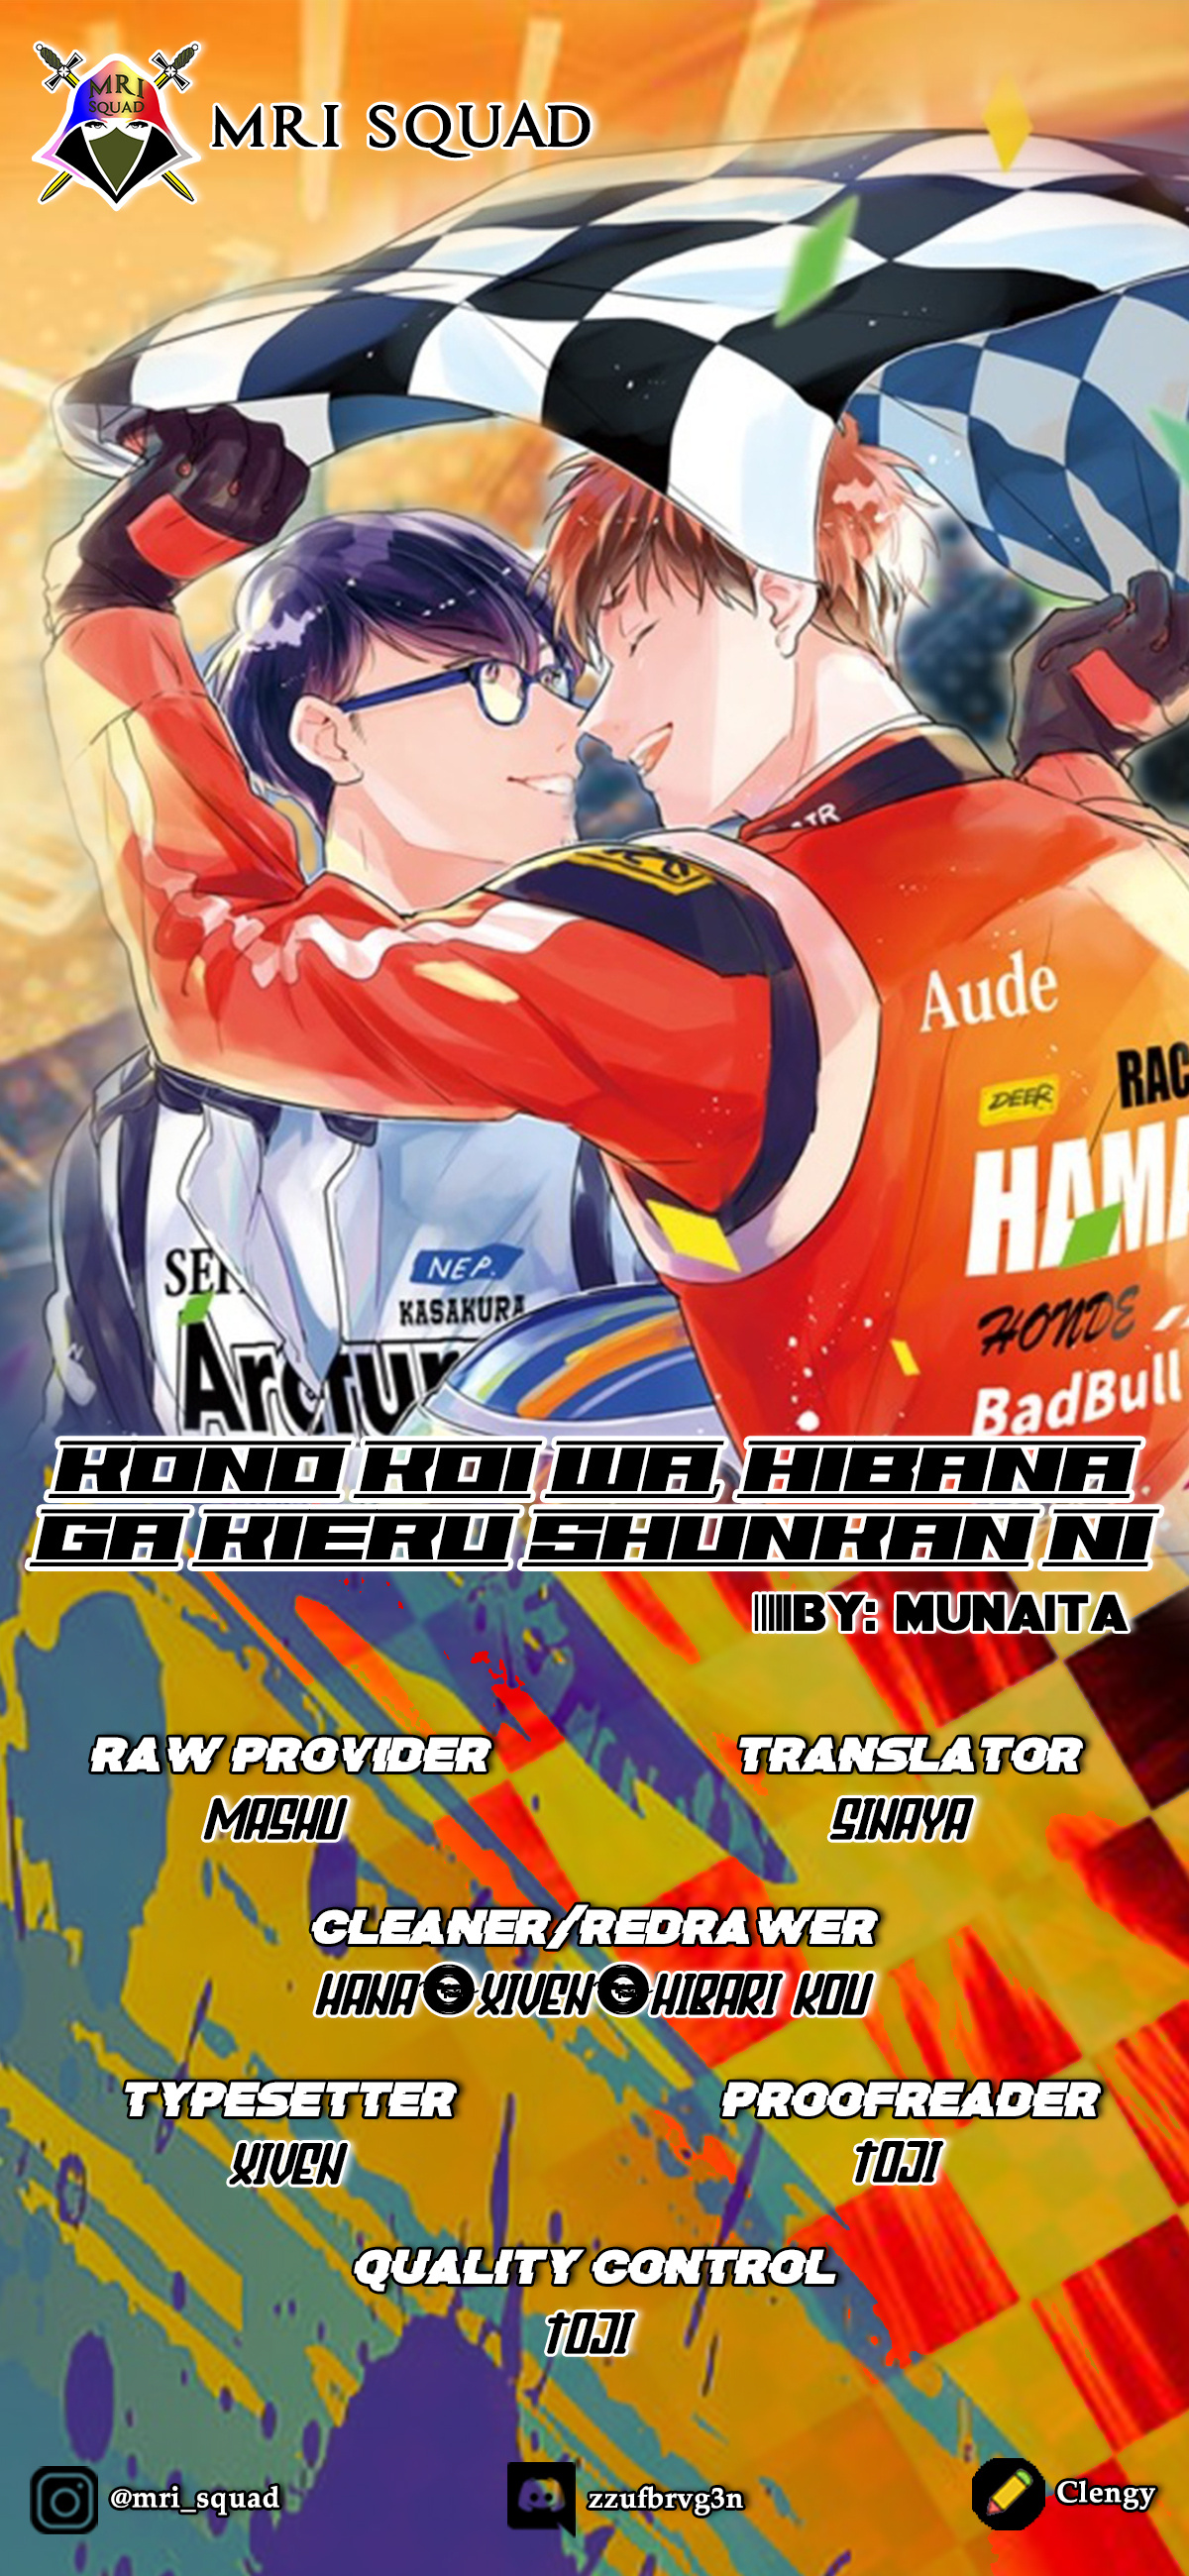 Kono Koi Wa, Hibana Ga Kieru Shunkan Ni Vol.2 Chapter 4 - Picture 2